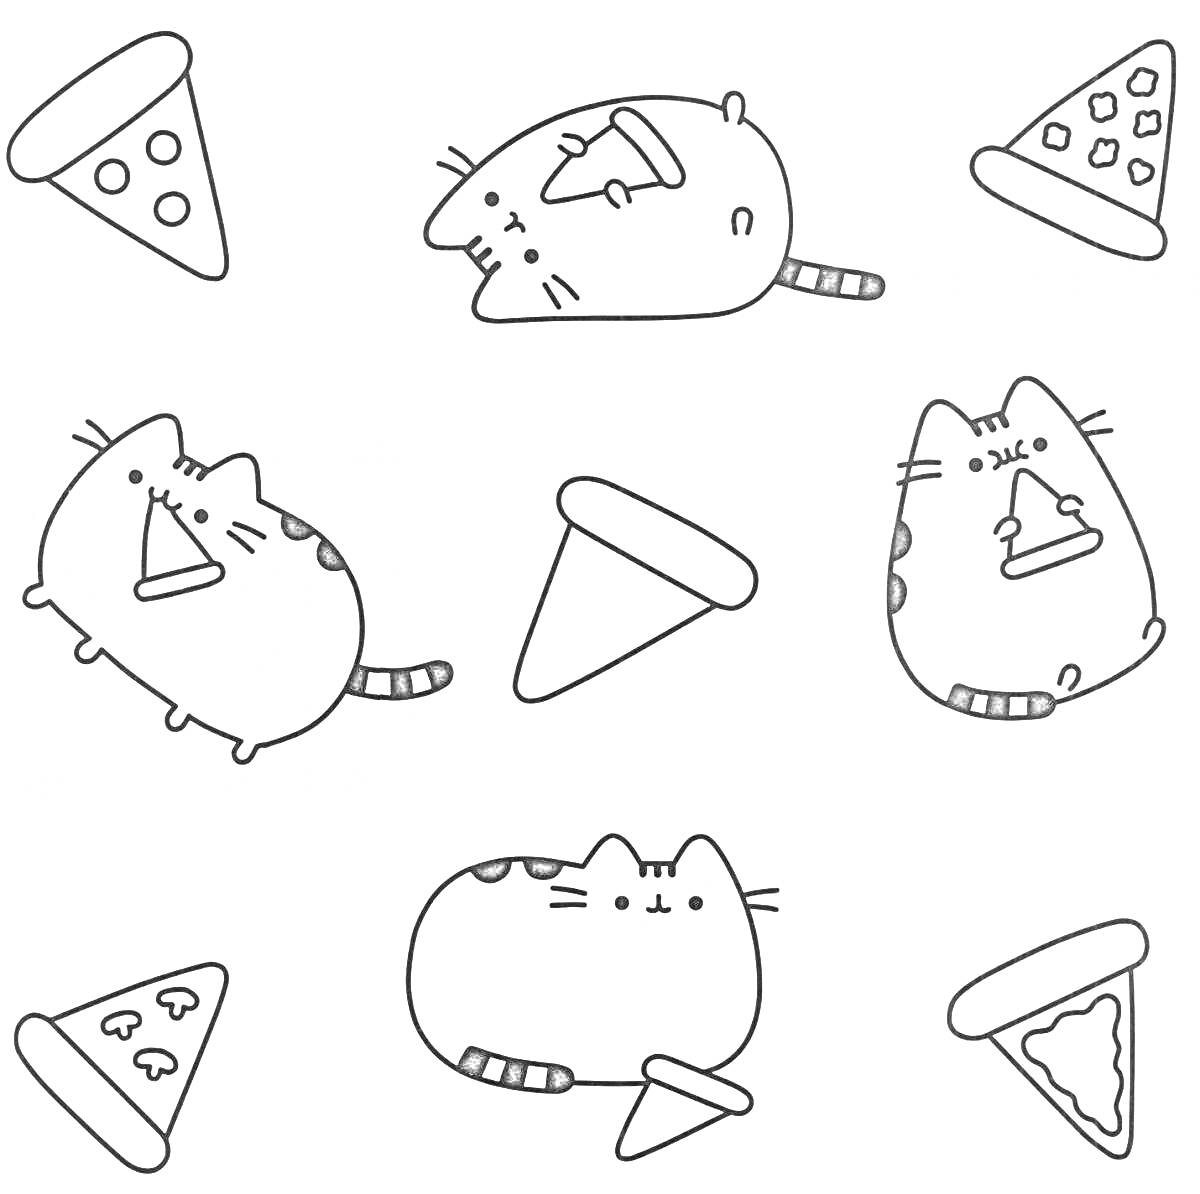 Коты и пицца